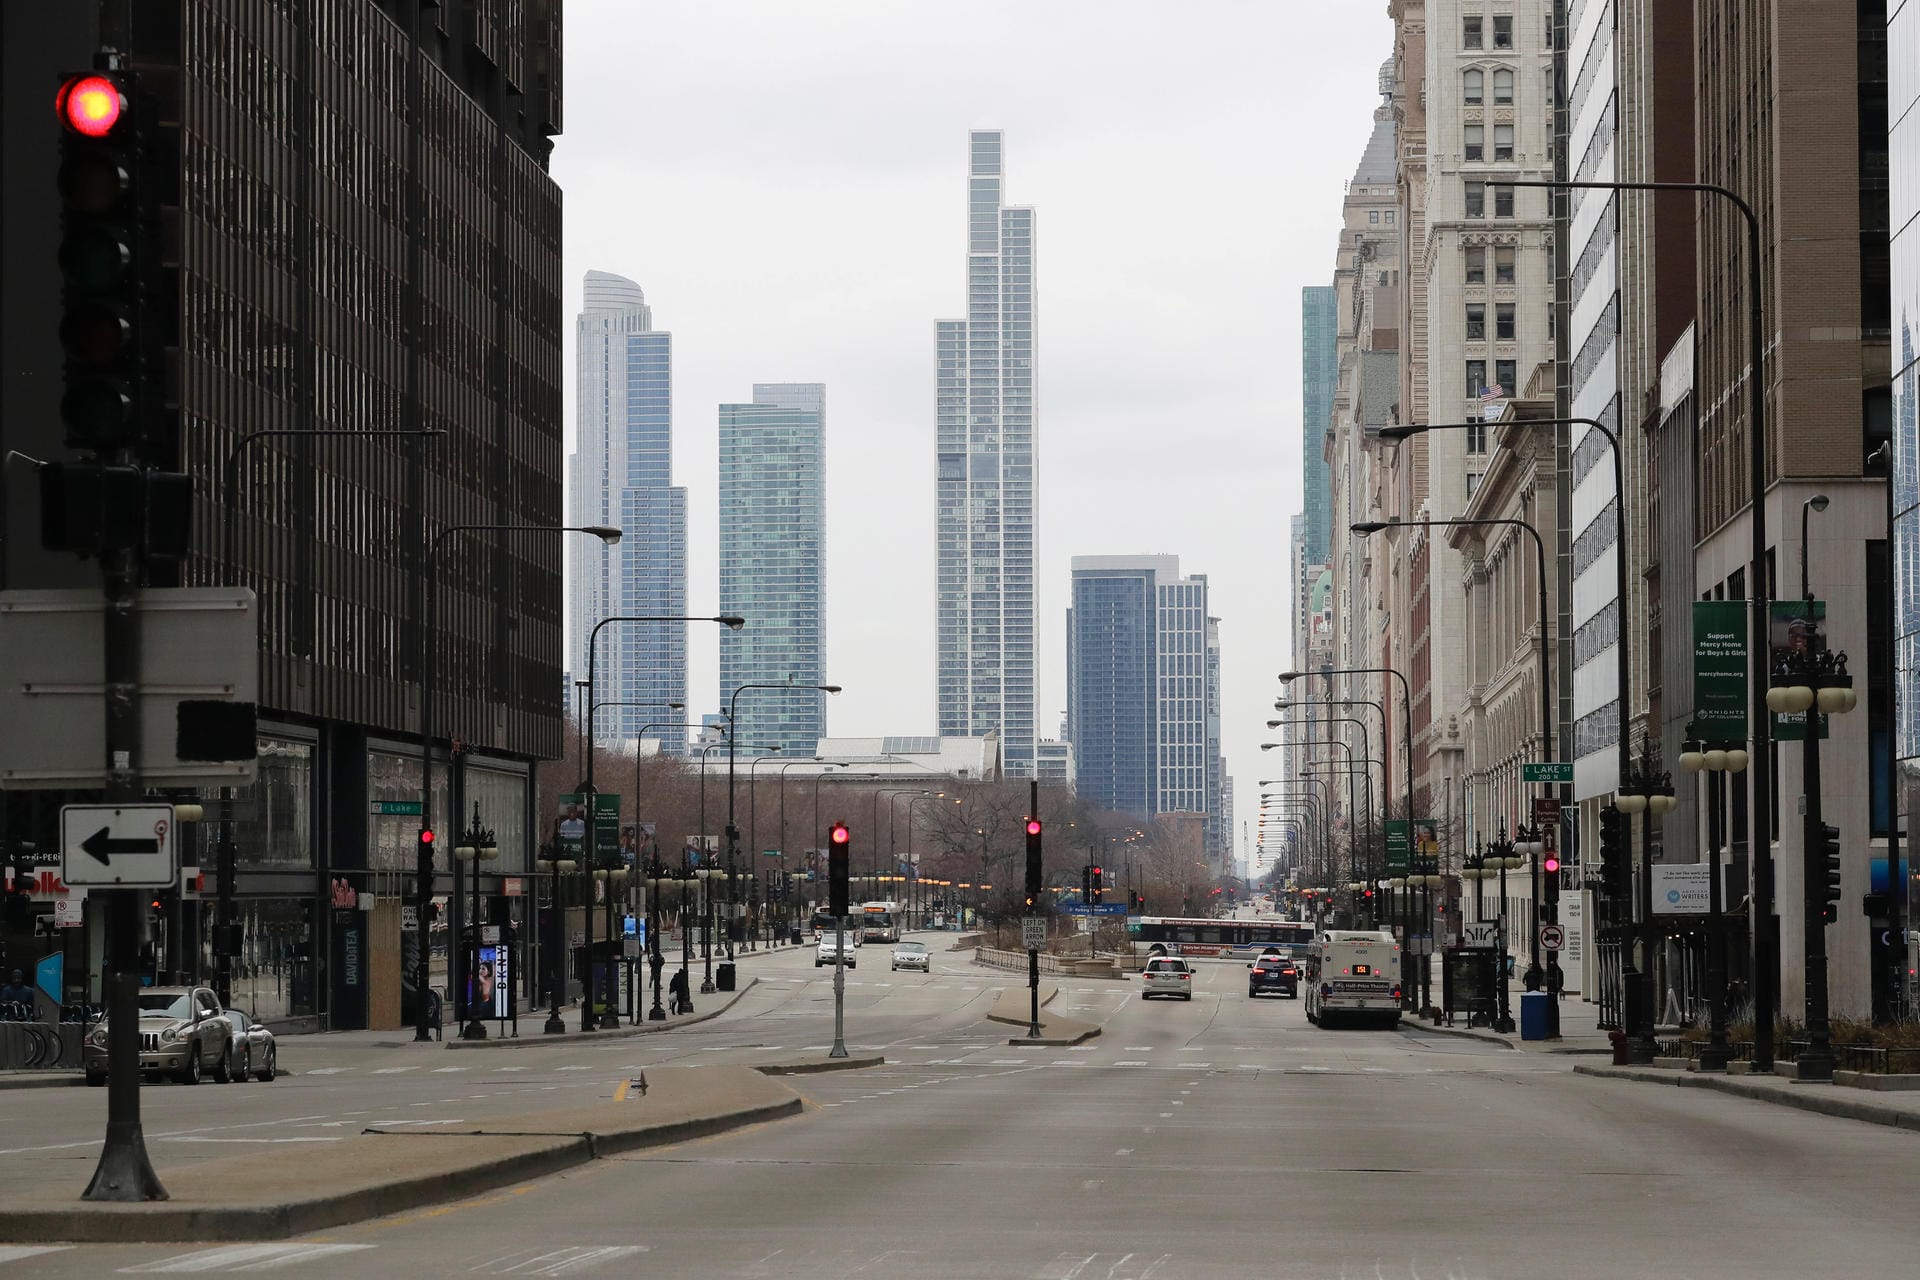 USA, Chicago: In der Innenstadt tummeln sich für gewöhnlich zahlreiche Menschen und Autos. Nun ist sie fast menschenleer.